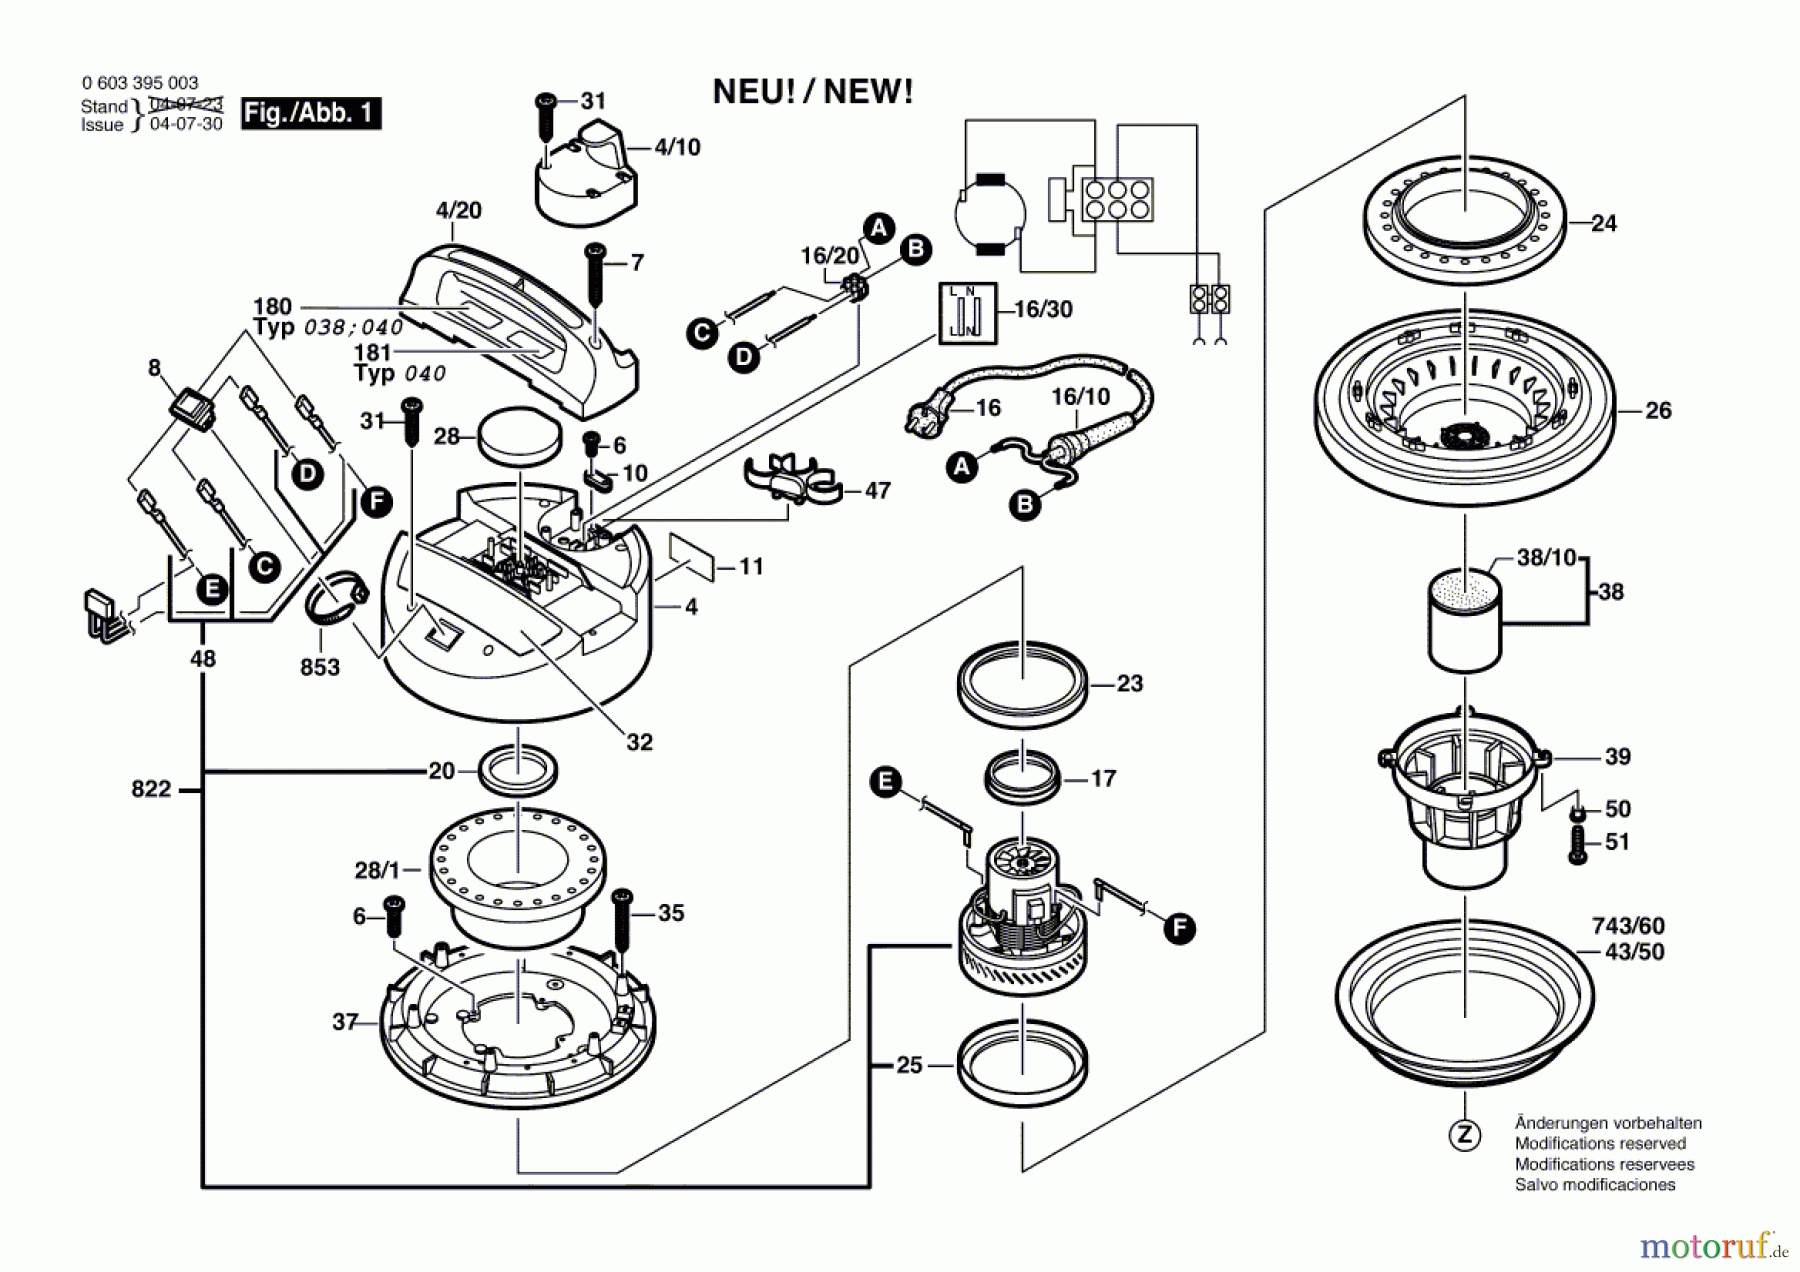  Bosch Werkzeug Allzwecksauger PAS 11-21 Seite 1